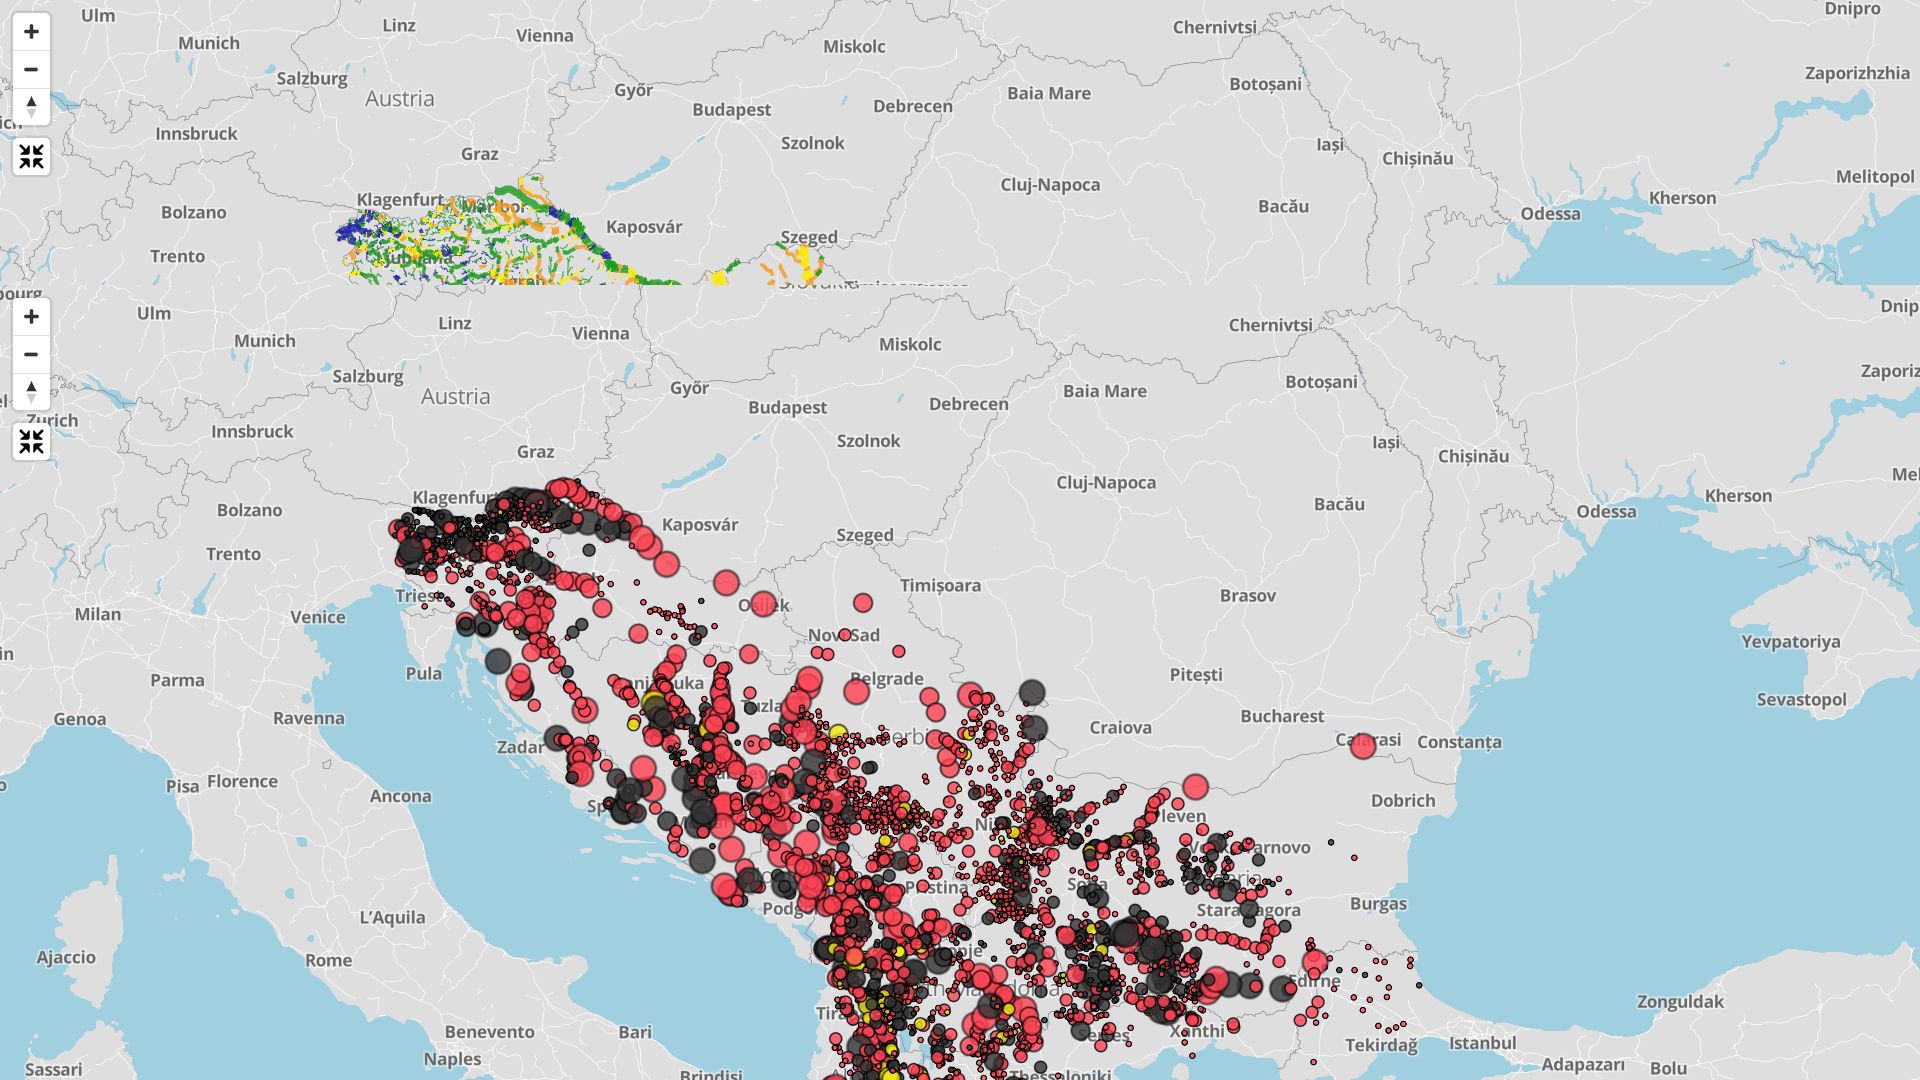 Карта ГЭС на Балканах. Чёрным цветом выделены существующие гидроэлектростанции, жёлтым — строящиеся, красным — запланированные